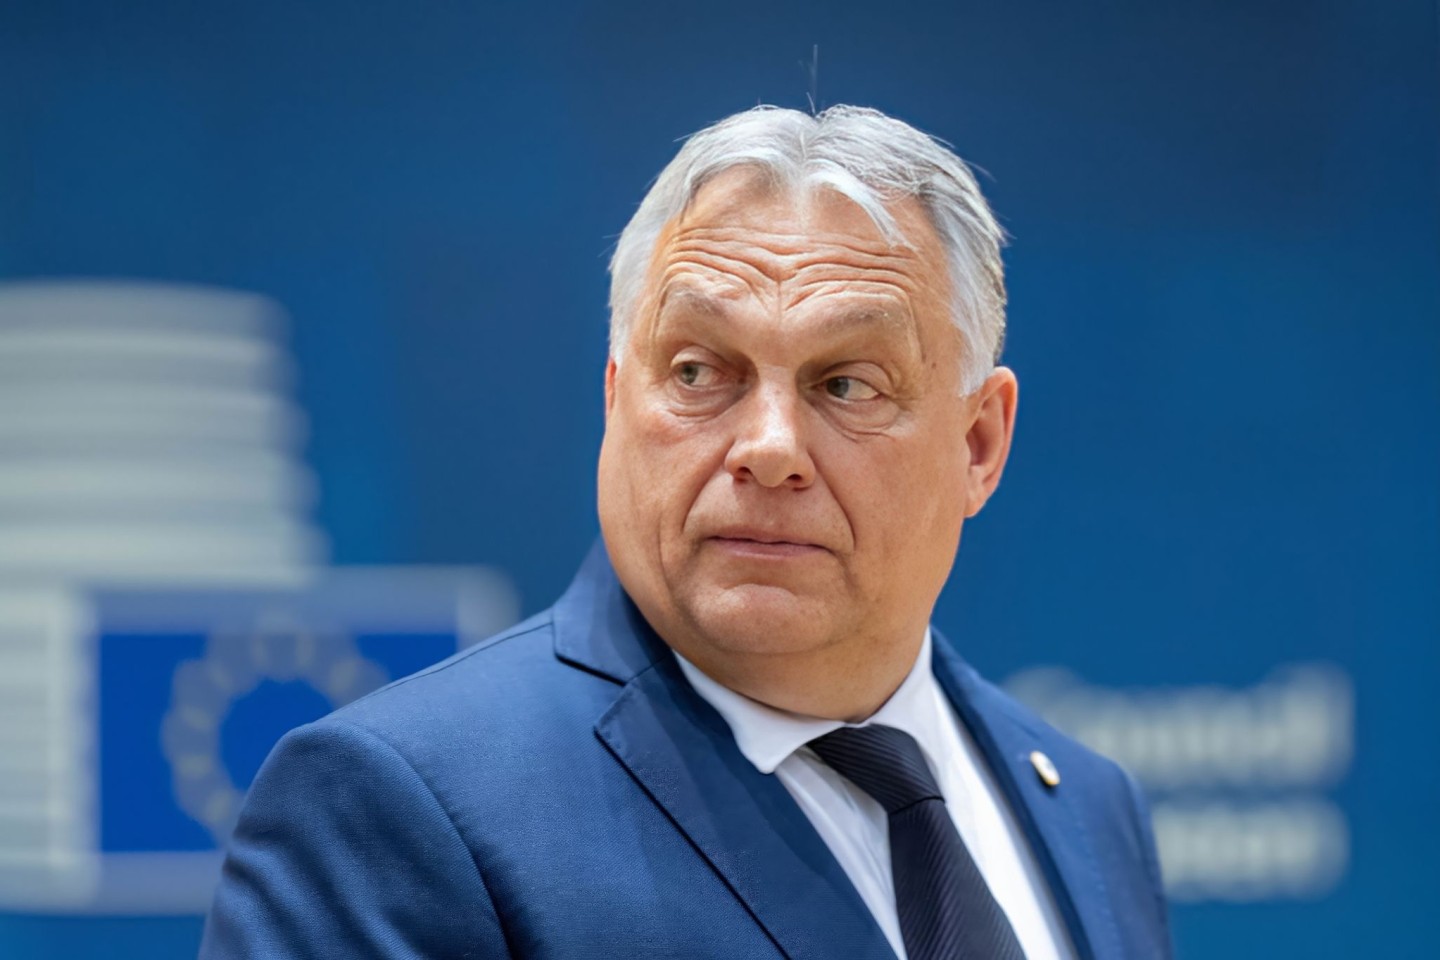 Der ungarische Regierungschef Viktor Orbán war nach einem EM-Spiel auf dem Weg zum Stuttgarter Flughafen.